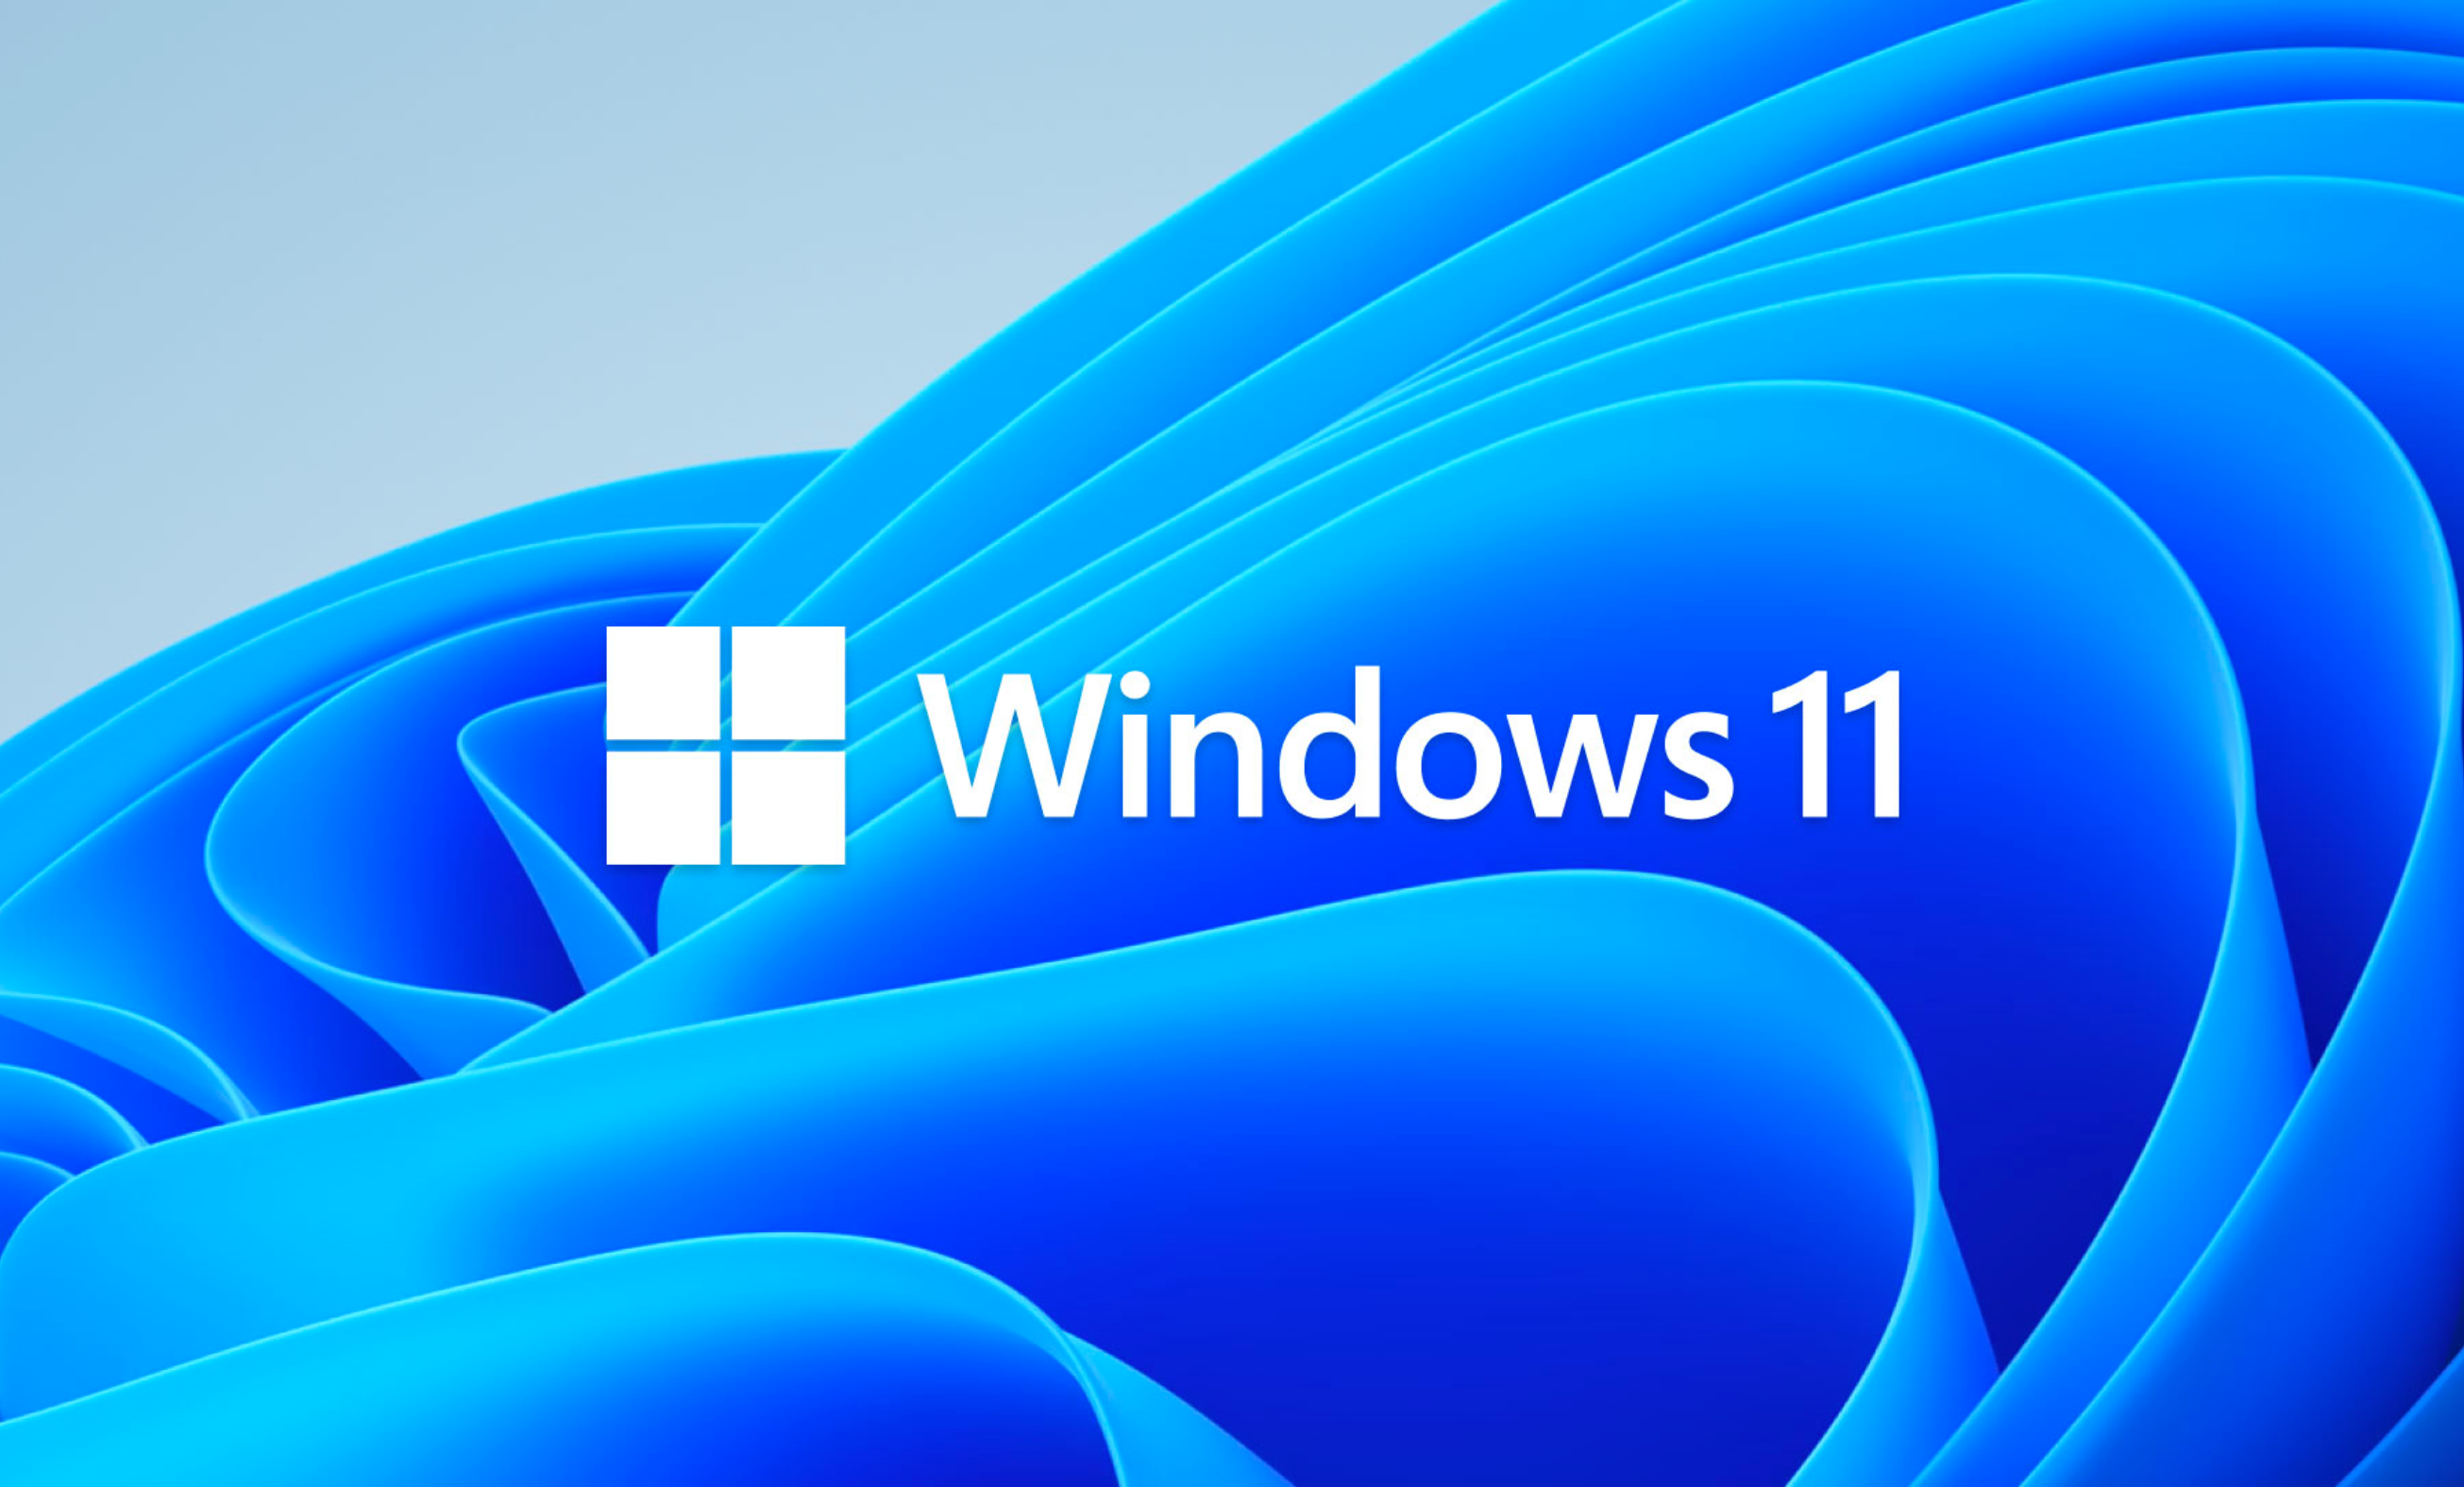 Windows 11: Os problemas já começaram